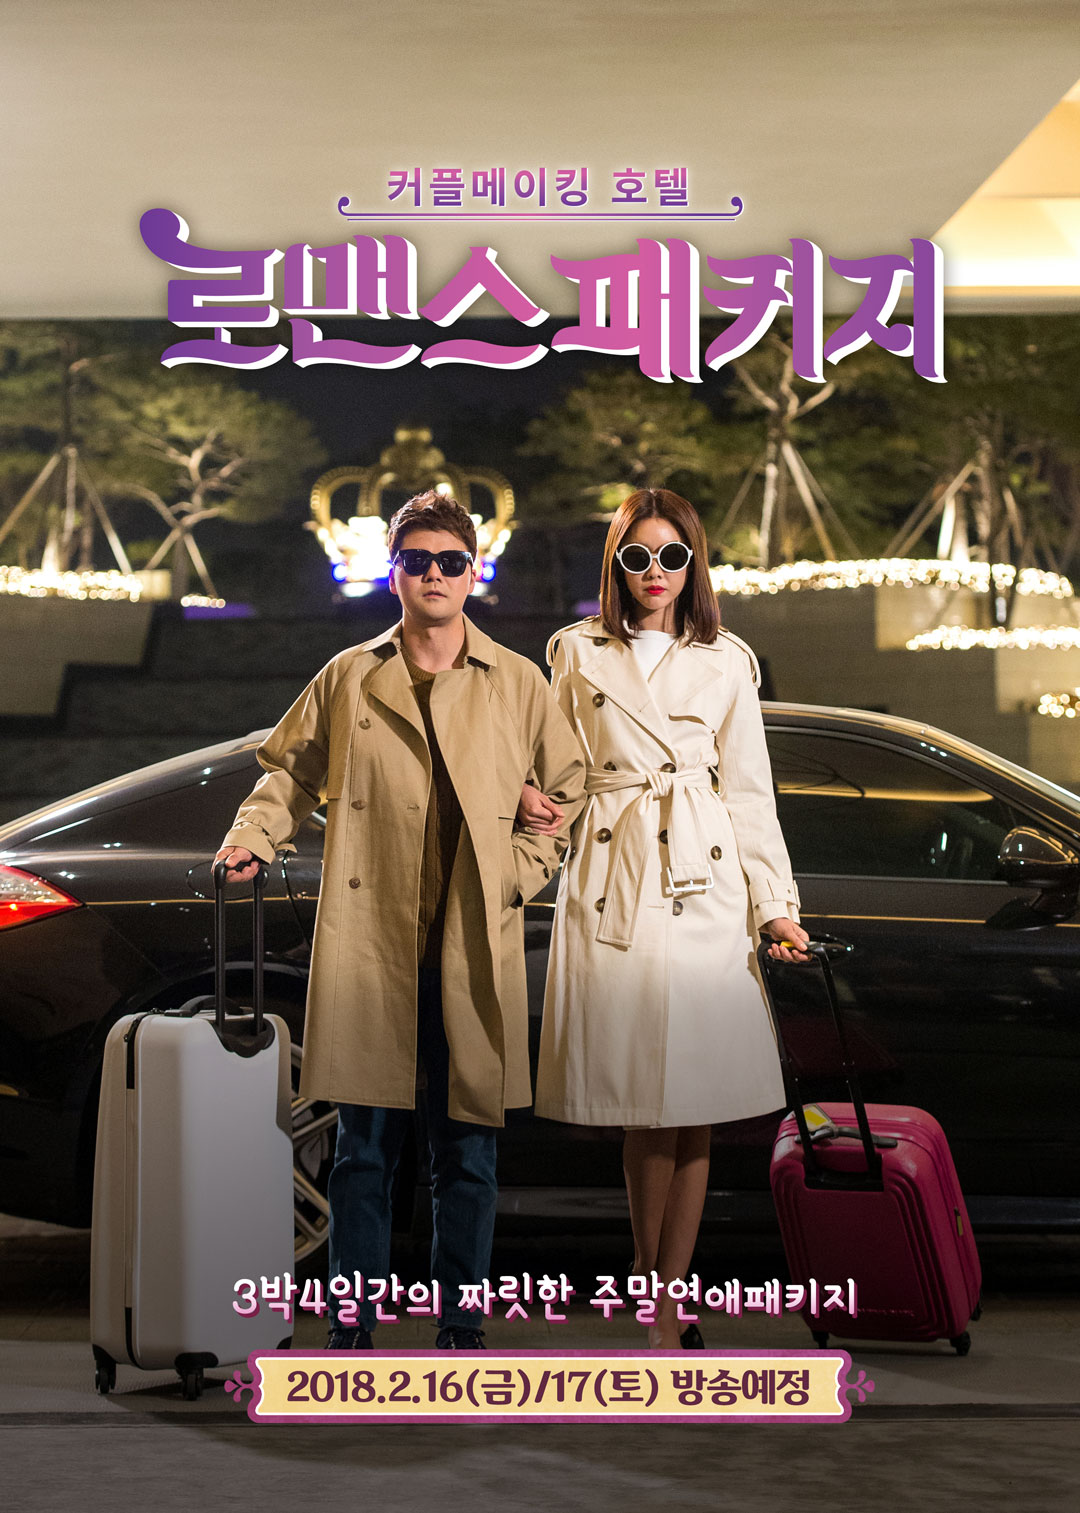  '로맨스 패키지', '싱글와이프2' 후속 편성 확정